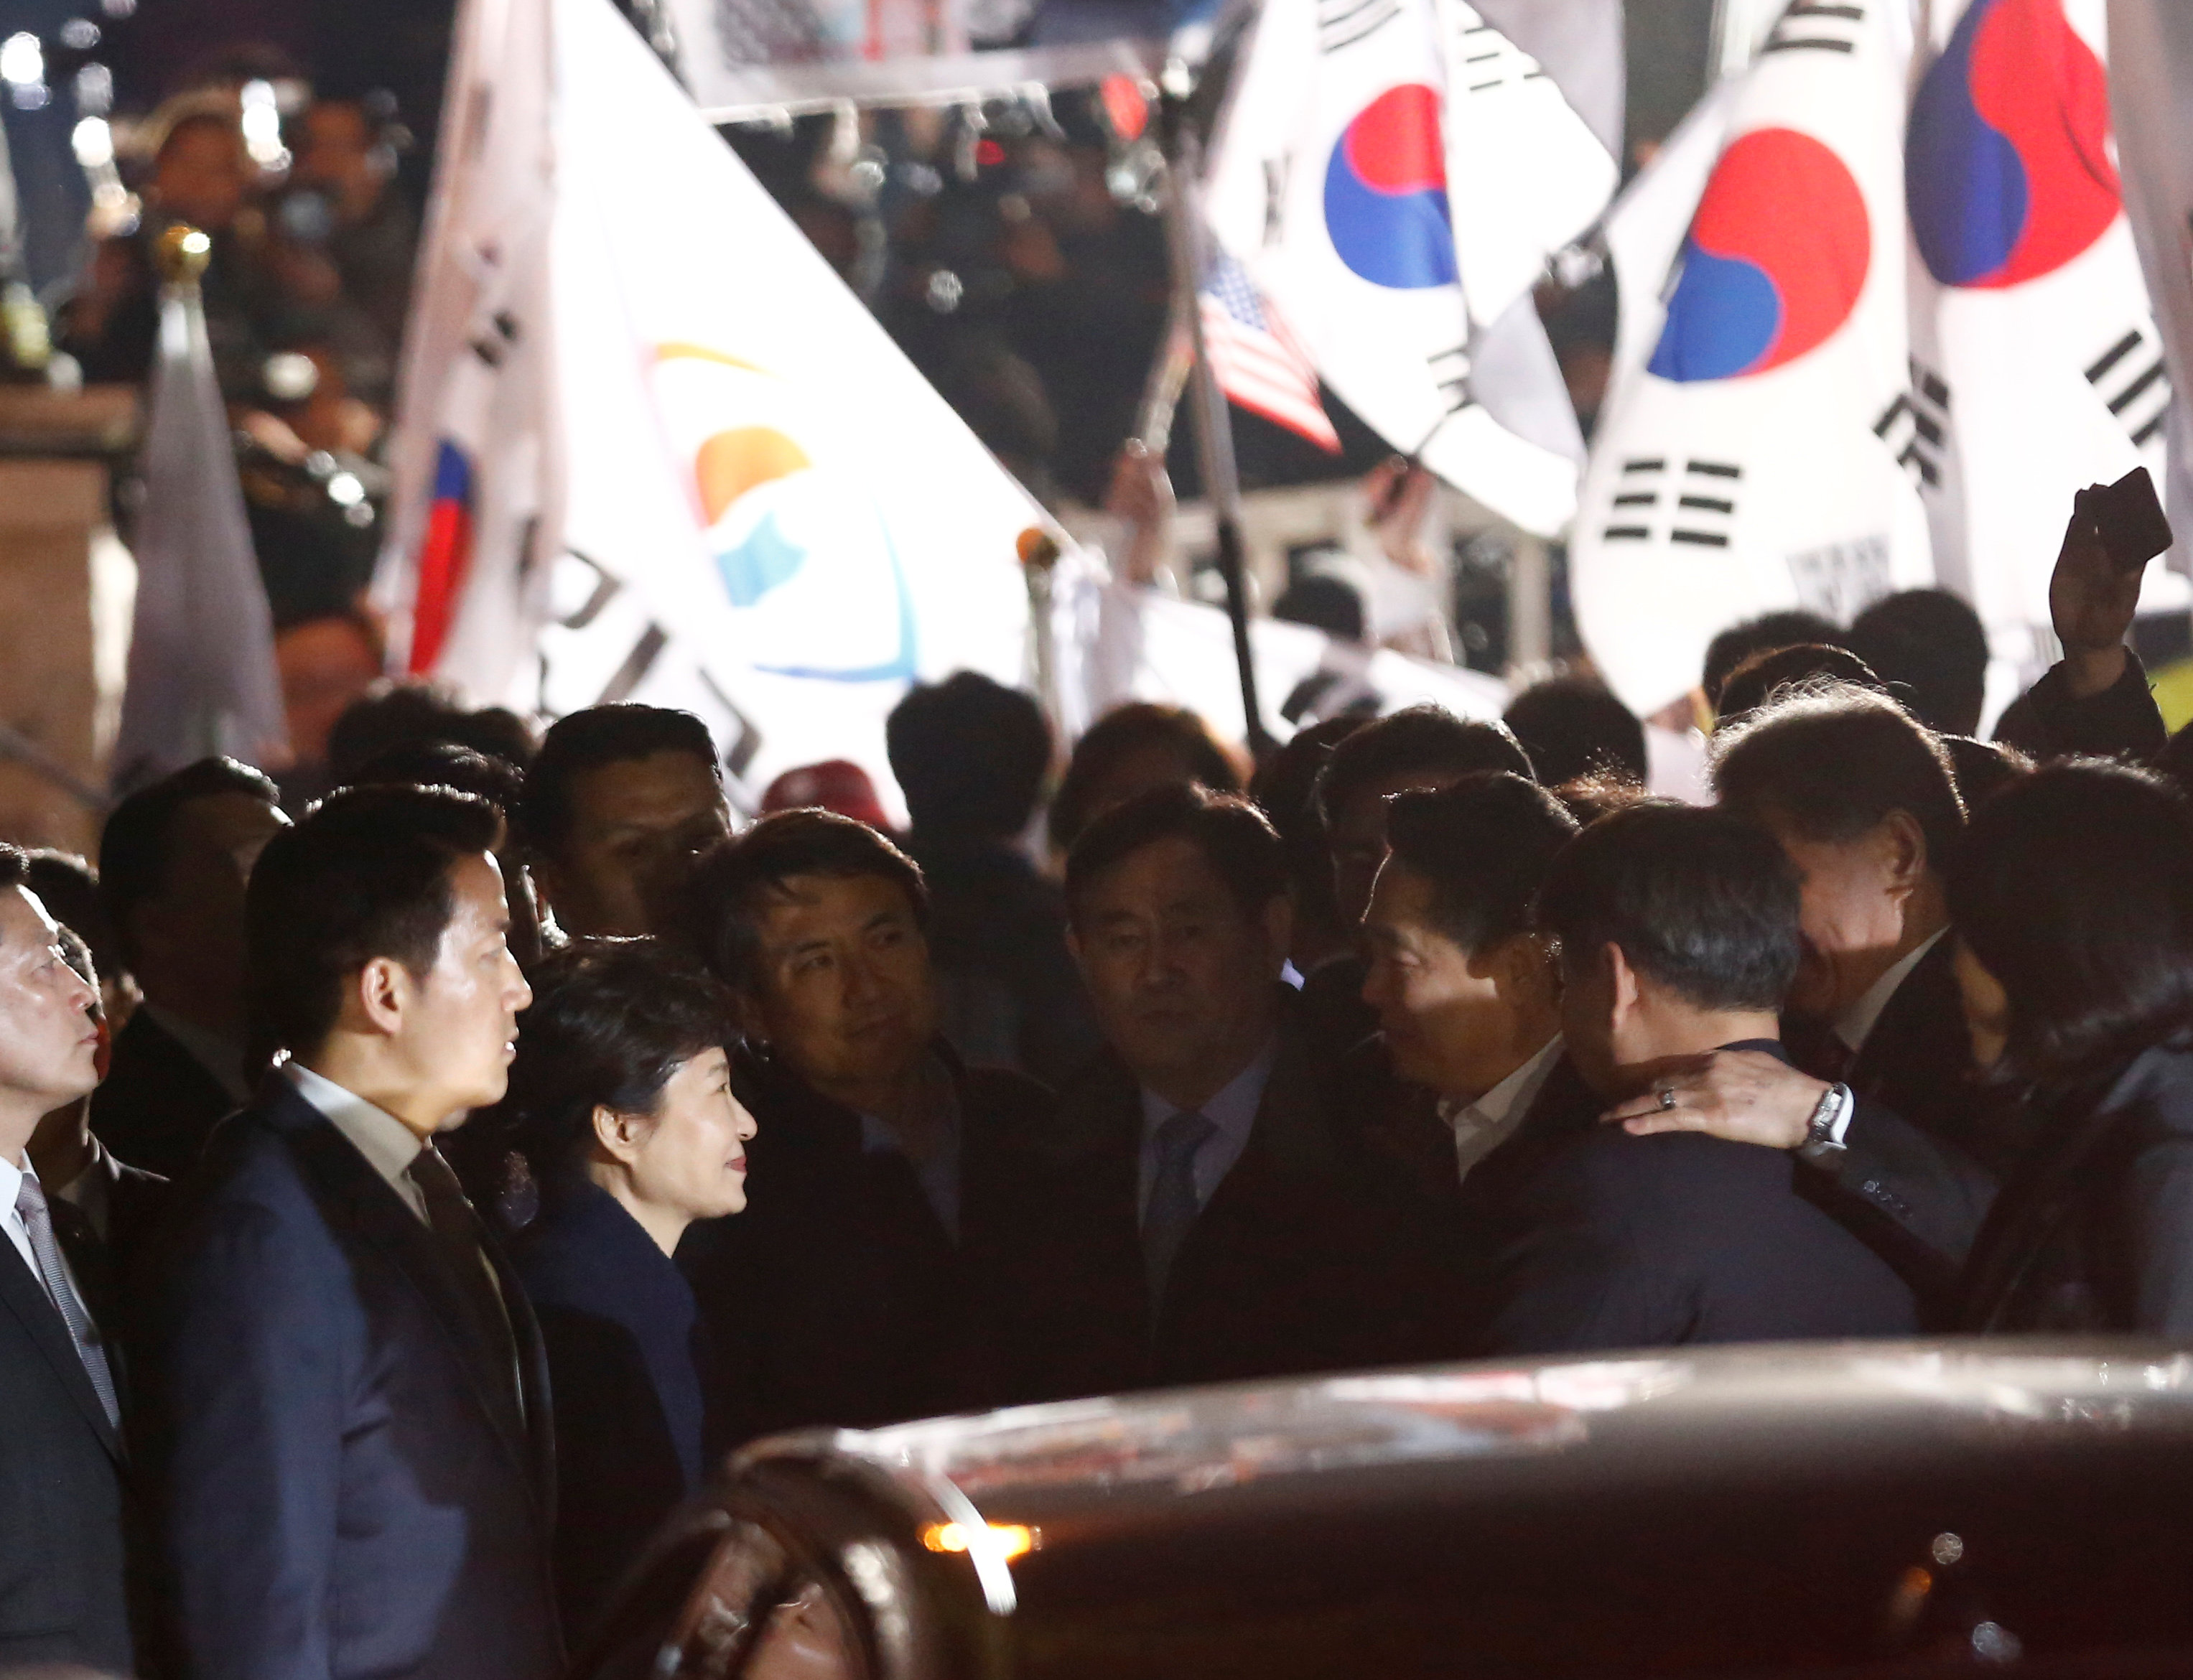 رئيسة كوريا الجنوبية المعزولة وسط حراسة أمنية مشددة